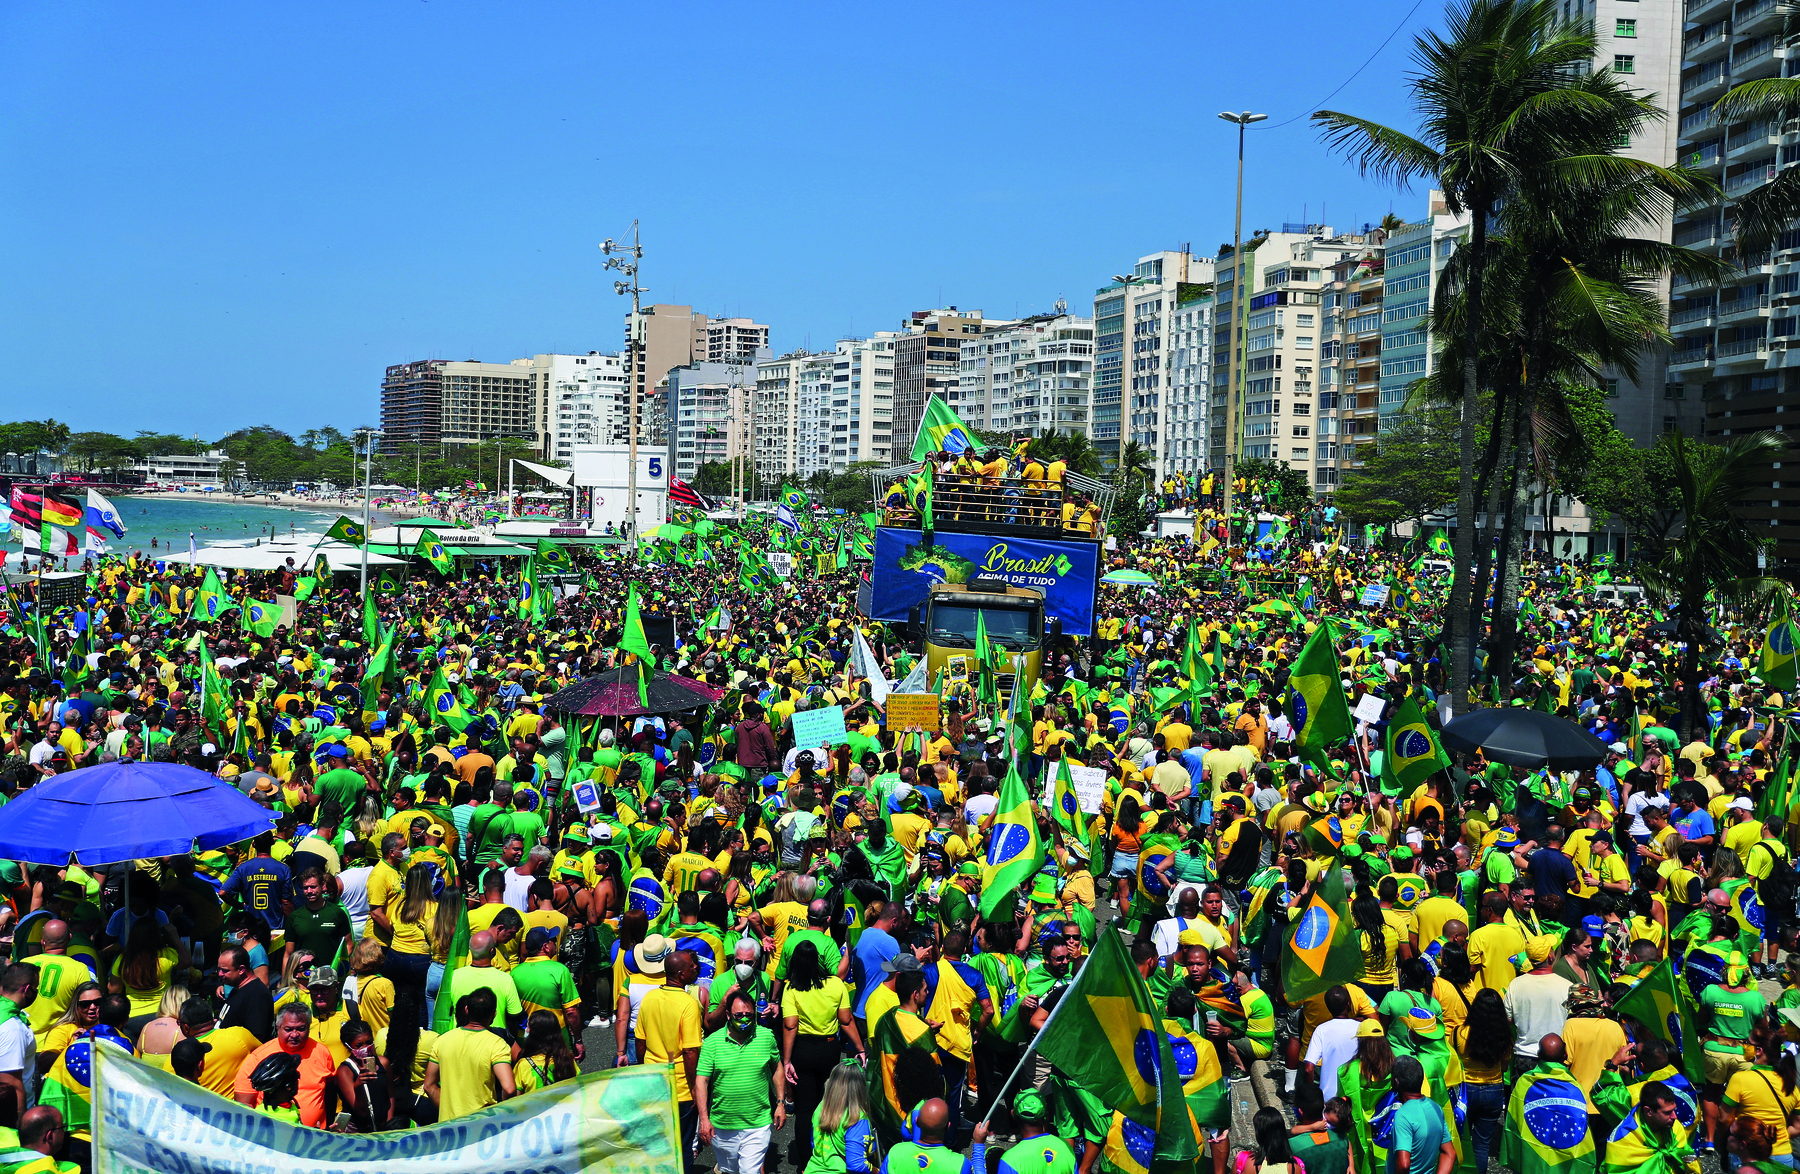 Fotografia. Em uma praia, rodeada por prédios altos, uma multidão de pessoas vestindo camisetas amarelas e verdes, portando bandeiras do Brasil. No centro da manifestação há um caminhão de trio elétrico, com pessoas sobre ele.  Ao fundo, no canto esquerdo, o mar.